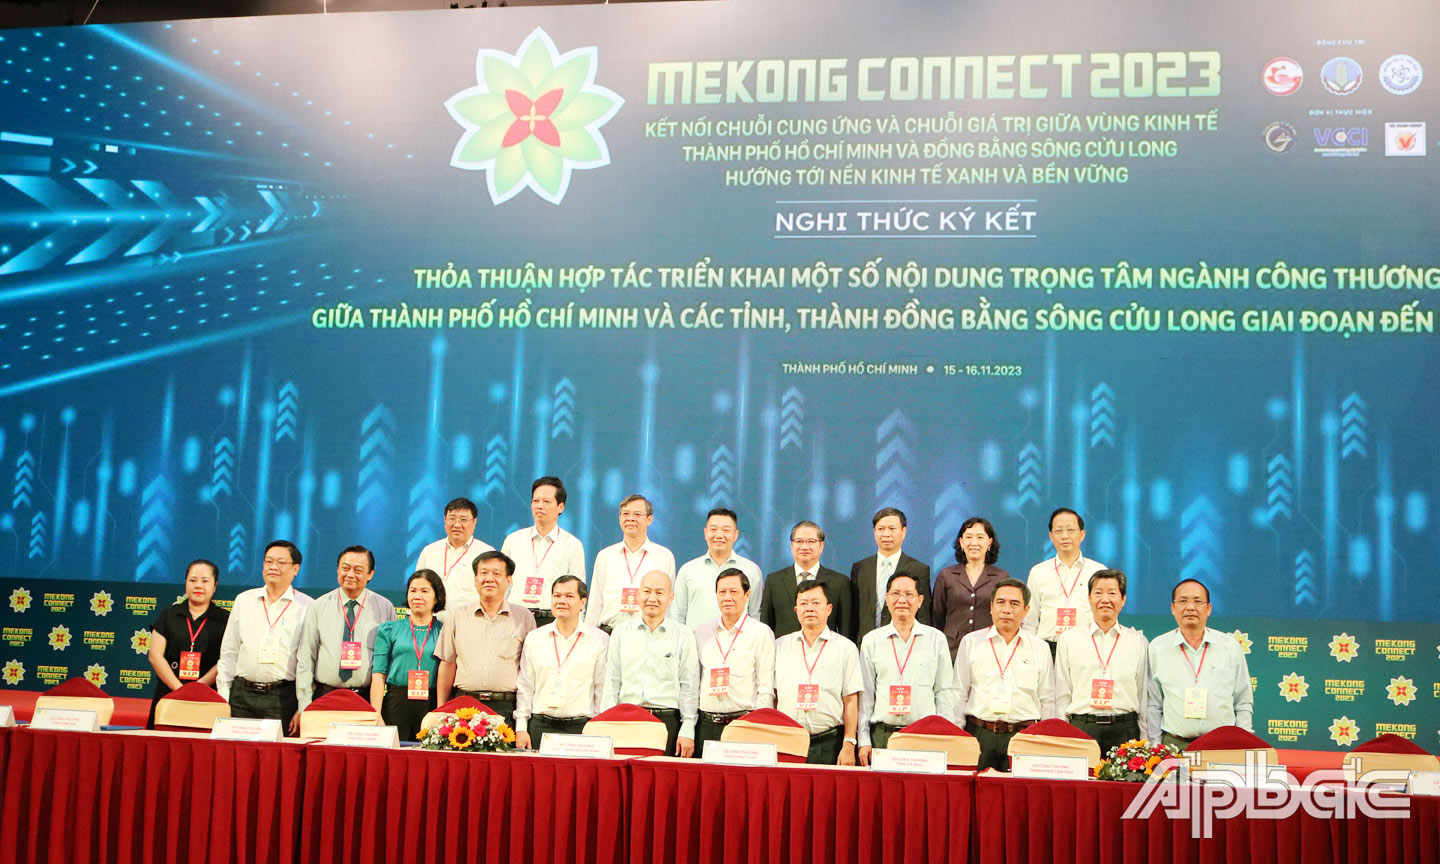 Lễ ký kết hợp tác triển khai các nội dung trọng tâm ngành công thương giữa TP. Hồ Chí Minh và các tỉnh, thành ĐBSCL giai đoạn 2023 - 2025.